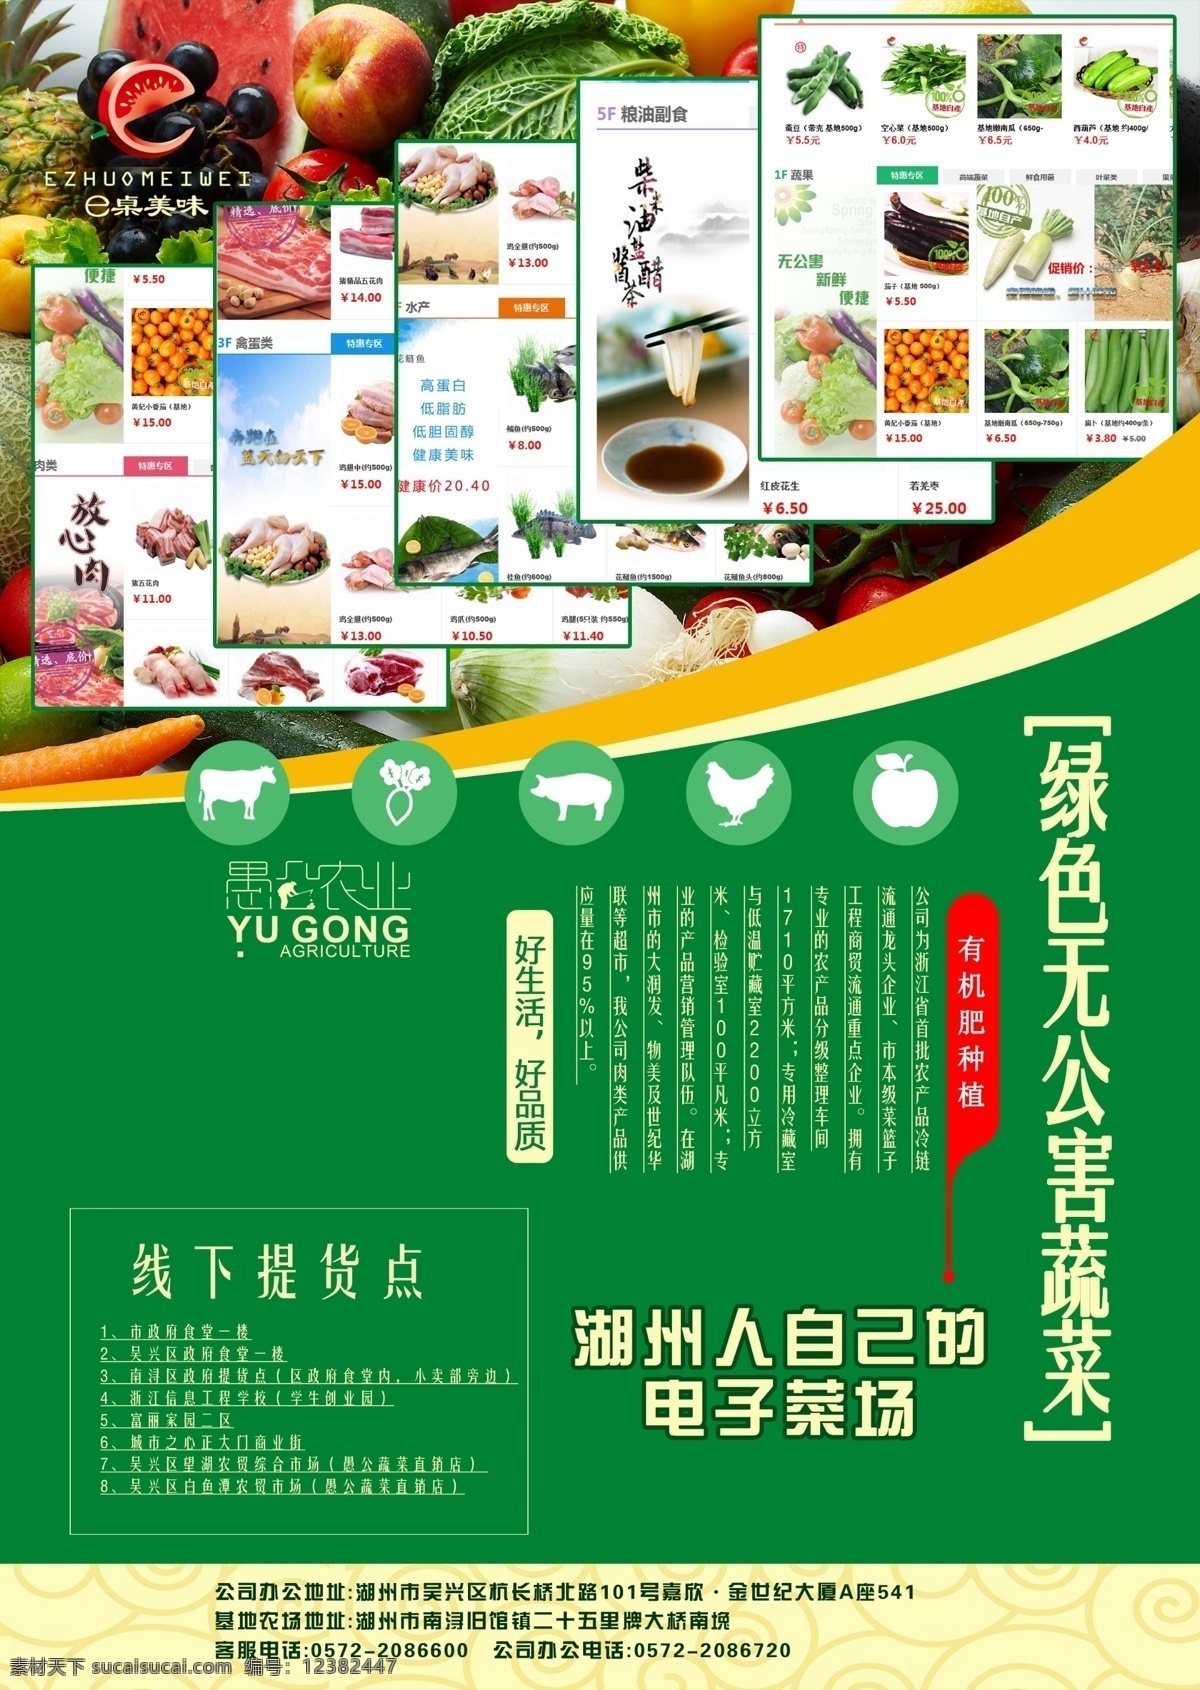 生鲜dm单页 蔬菜 水果 电子商务 dm dm单页 海报 dm海报 电子菜场 包装设计 dm宣传单